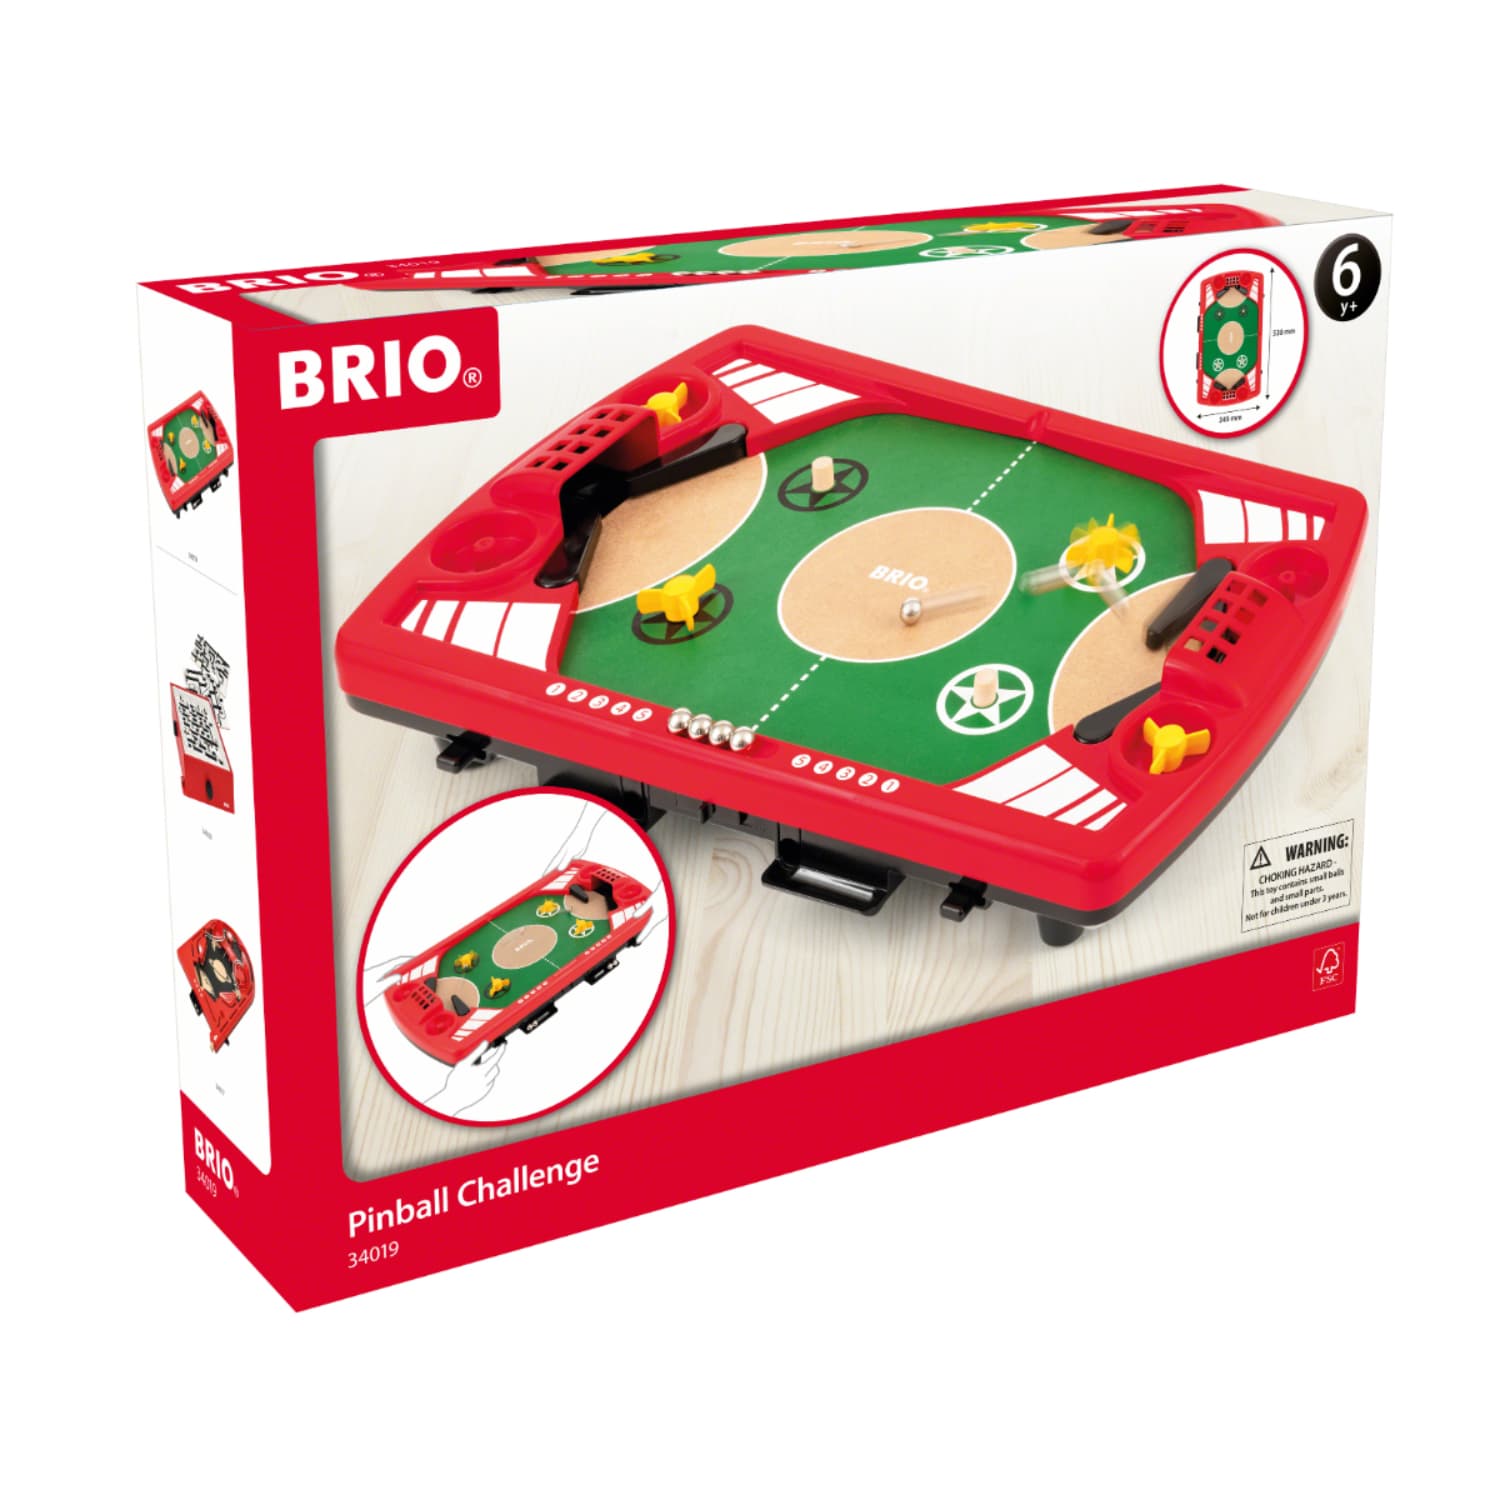 BRIO ブリオ ピンボールバトル 対戦式 木のおもちゃ 知育玩具 ボードゲーム 正規輸入品